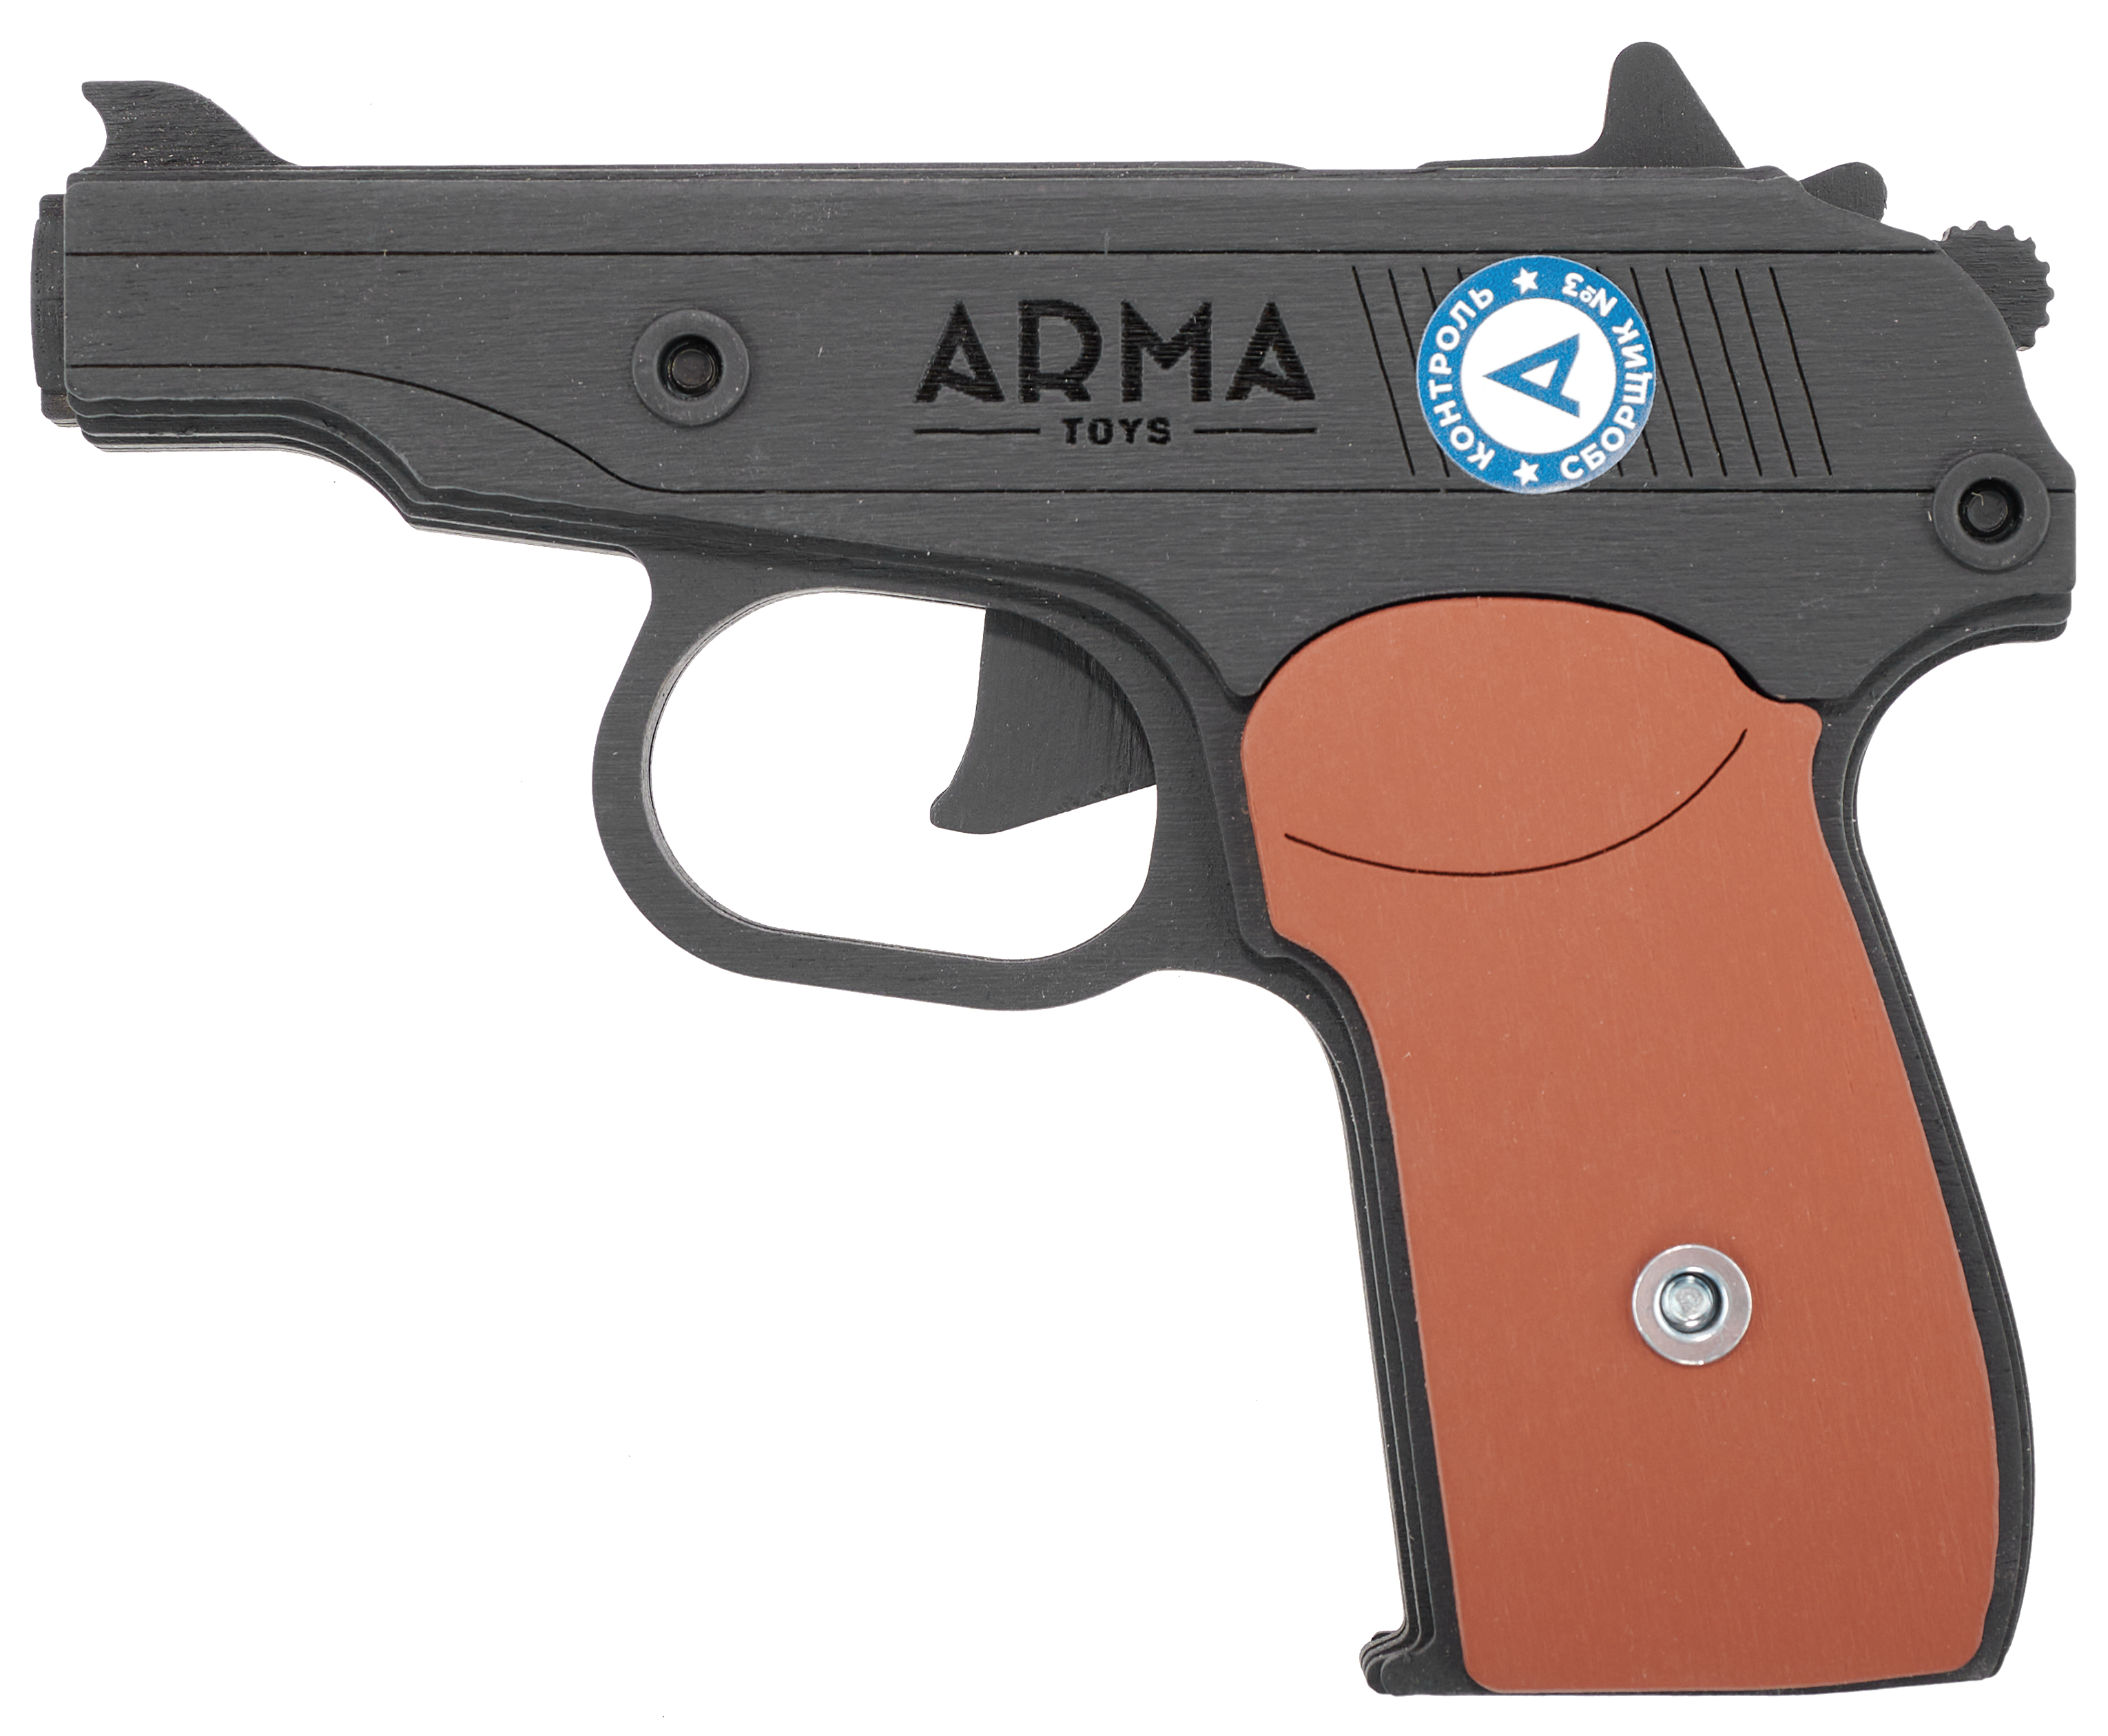 Резинкострел игрушечный Arma toys пистолет Макарова макет, ПМ, окрашенный, AT012K резинкострел arma toys автомат ак 47 макет калашников at006color